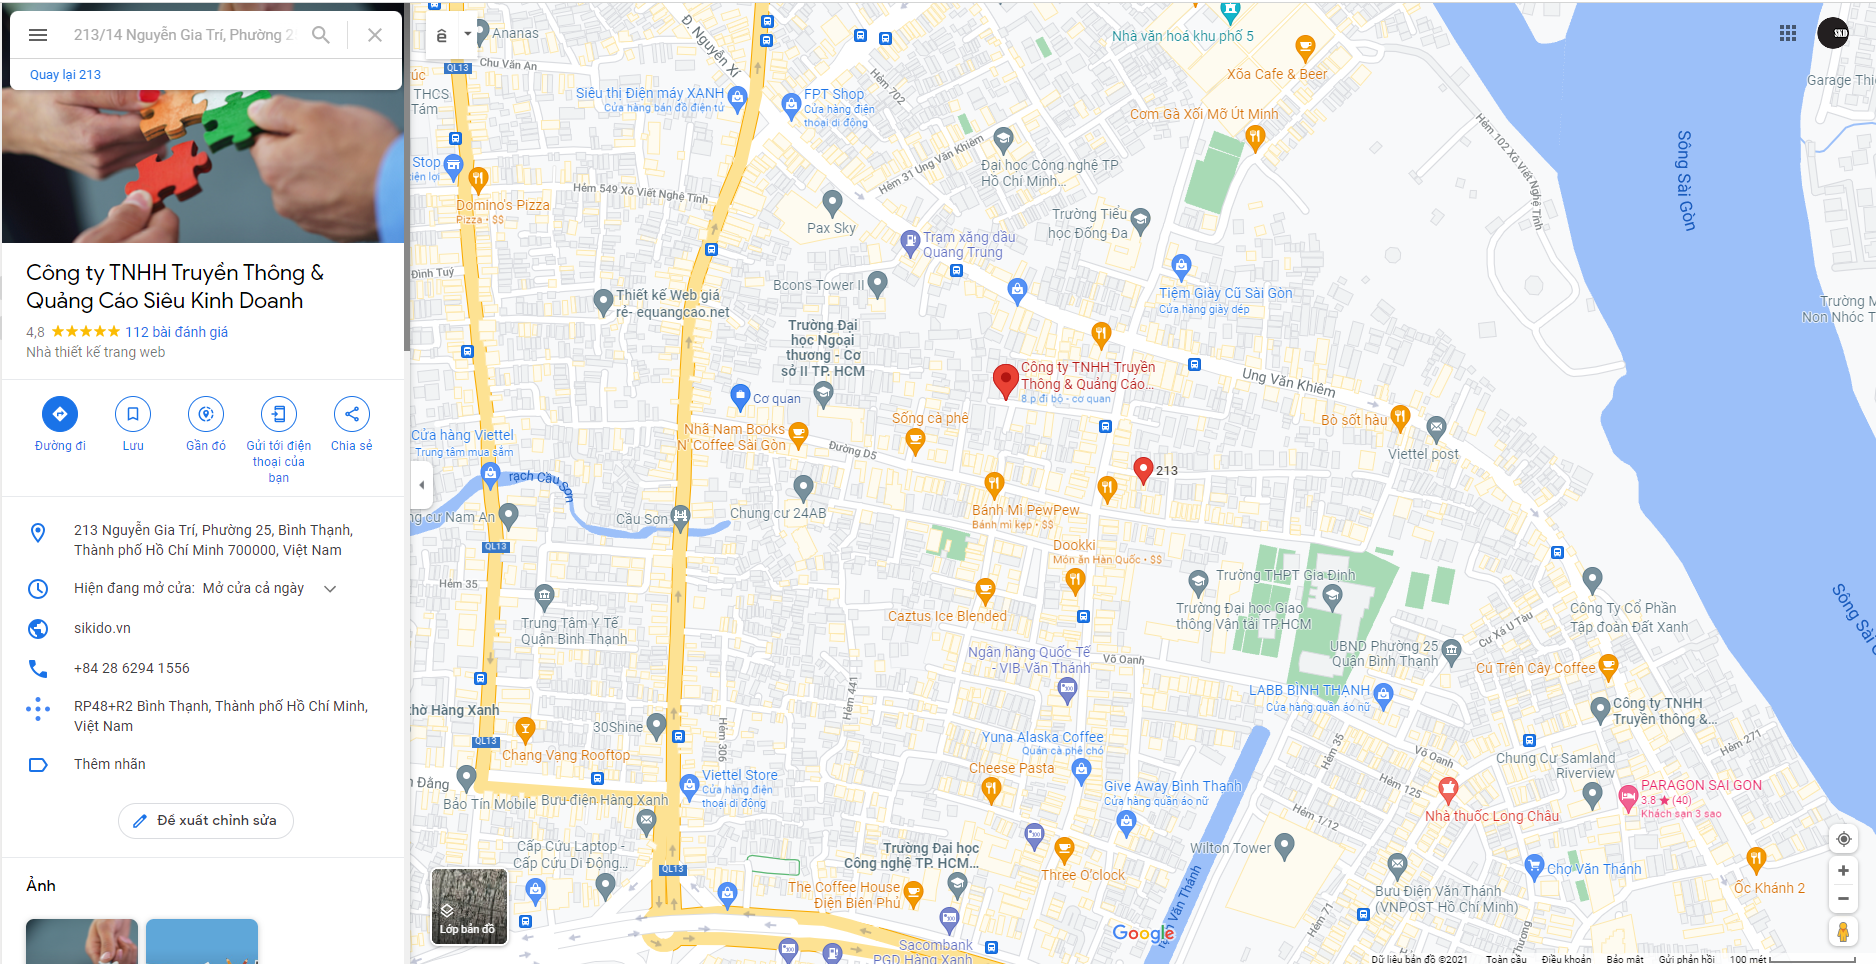 Hướng Dẫn Tạo Địa Điểm Doanh Nghiệp Trên Google Map